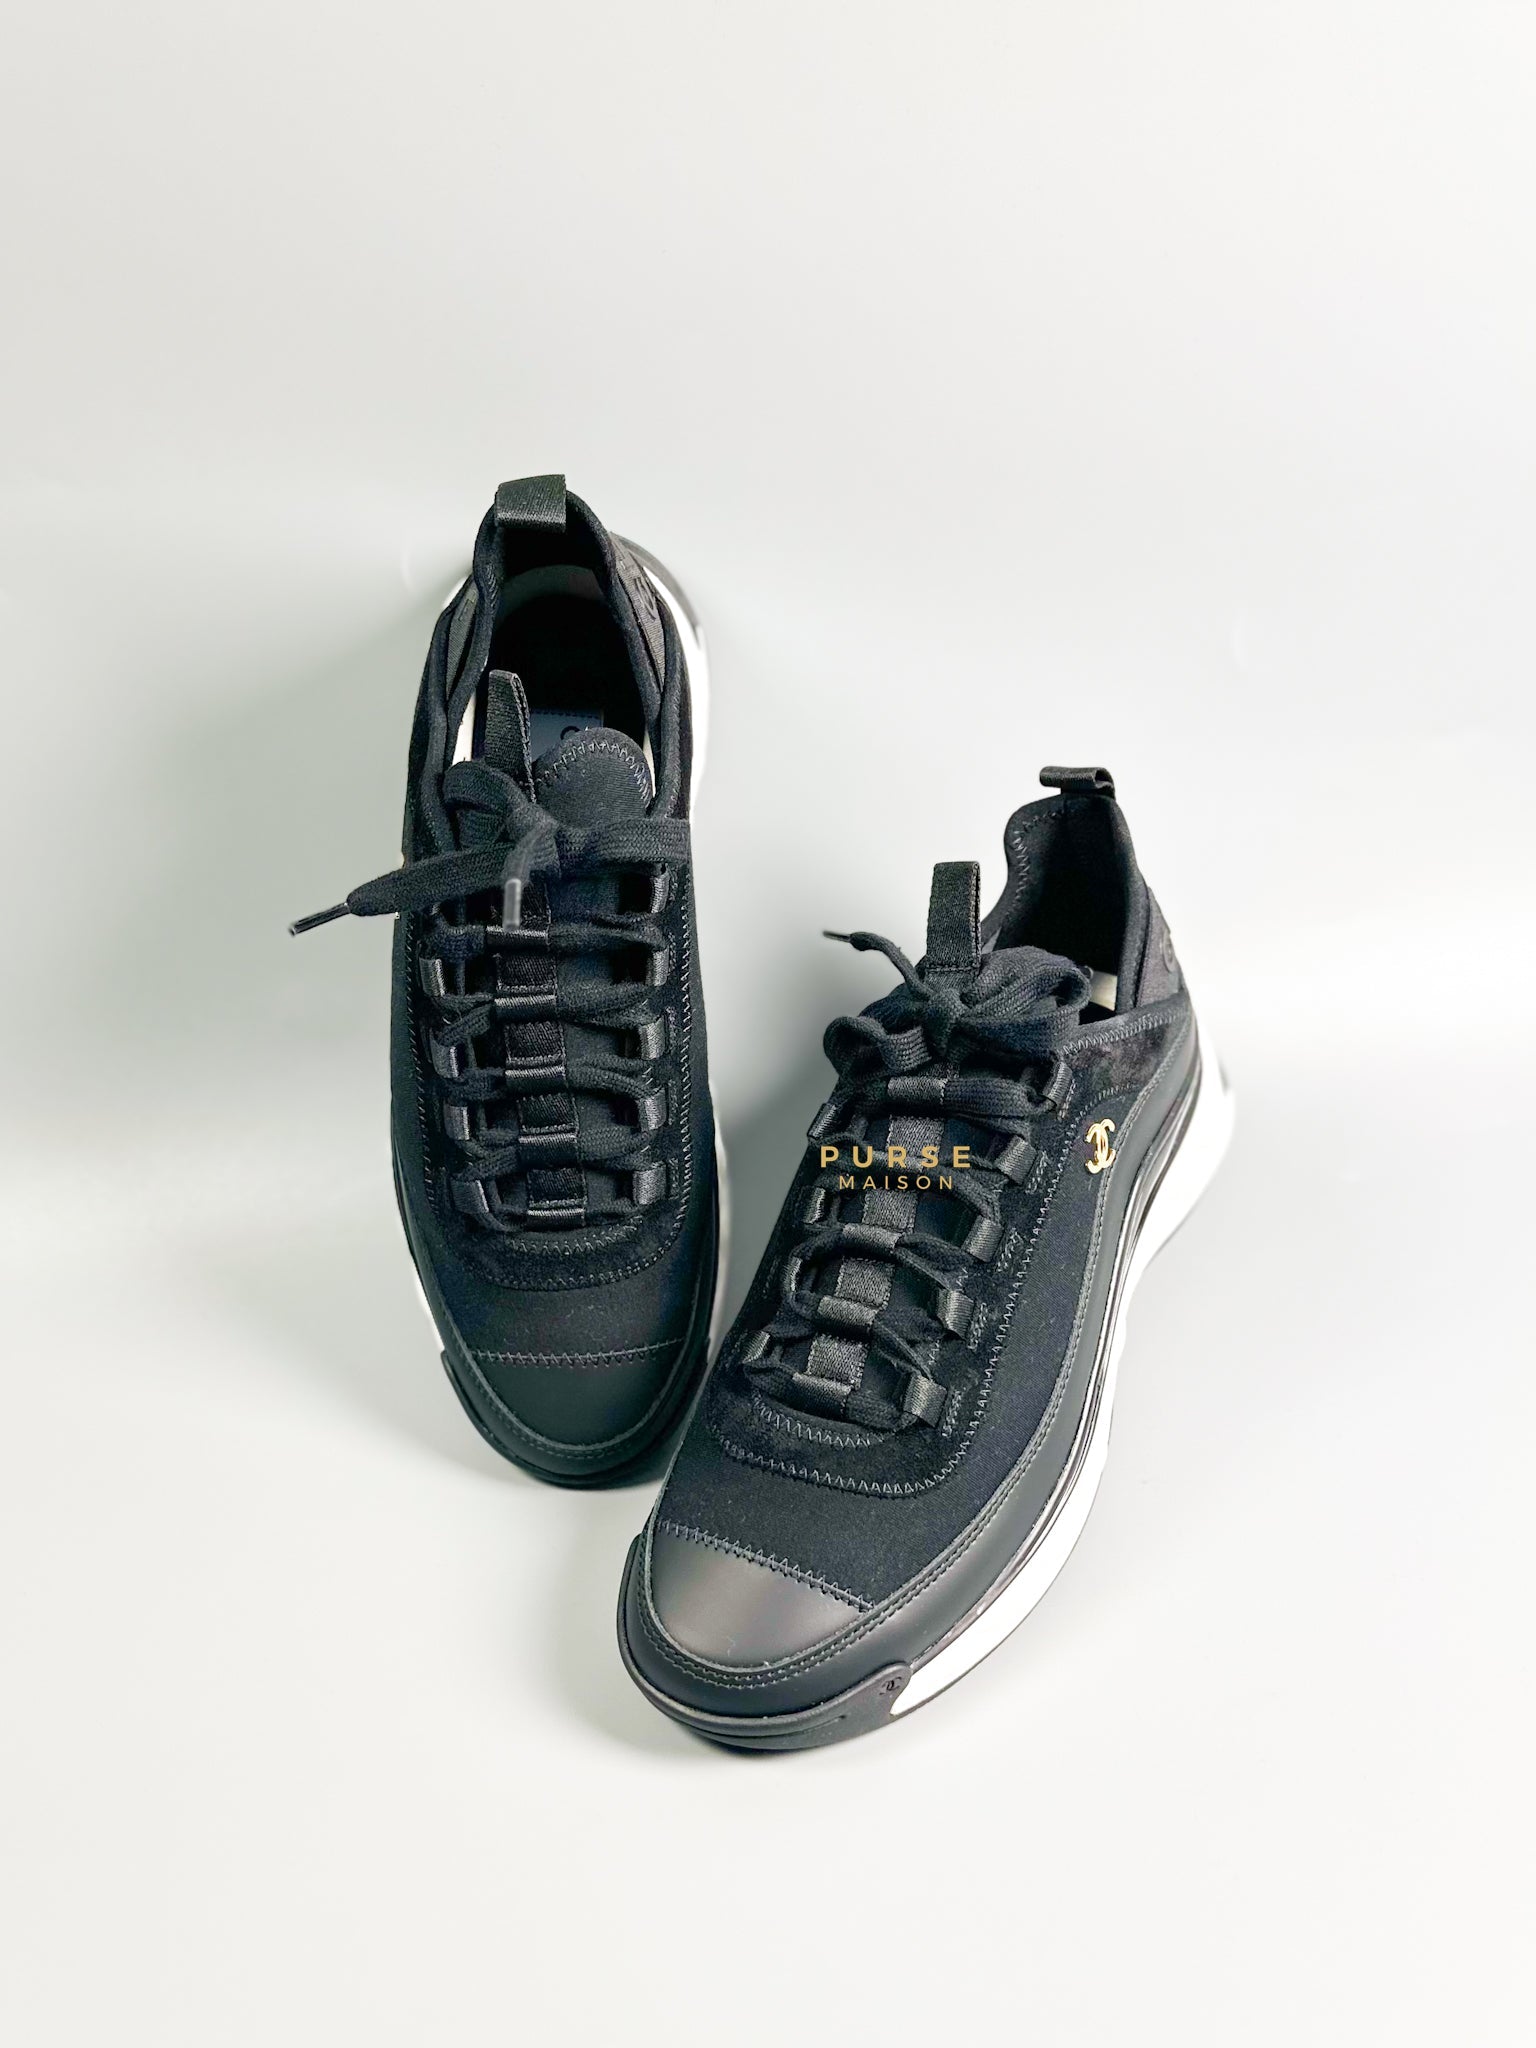 Lace Up Velvet Calfskin Mixed Fibers Sneakers Size 38.5 EU (25.5cm) | Purse Maison Luxury Bags Shop